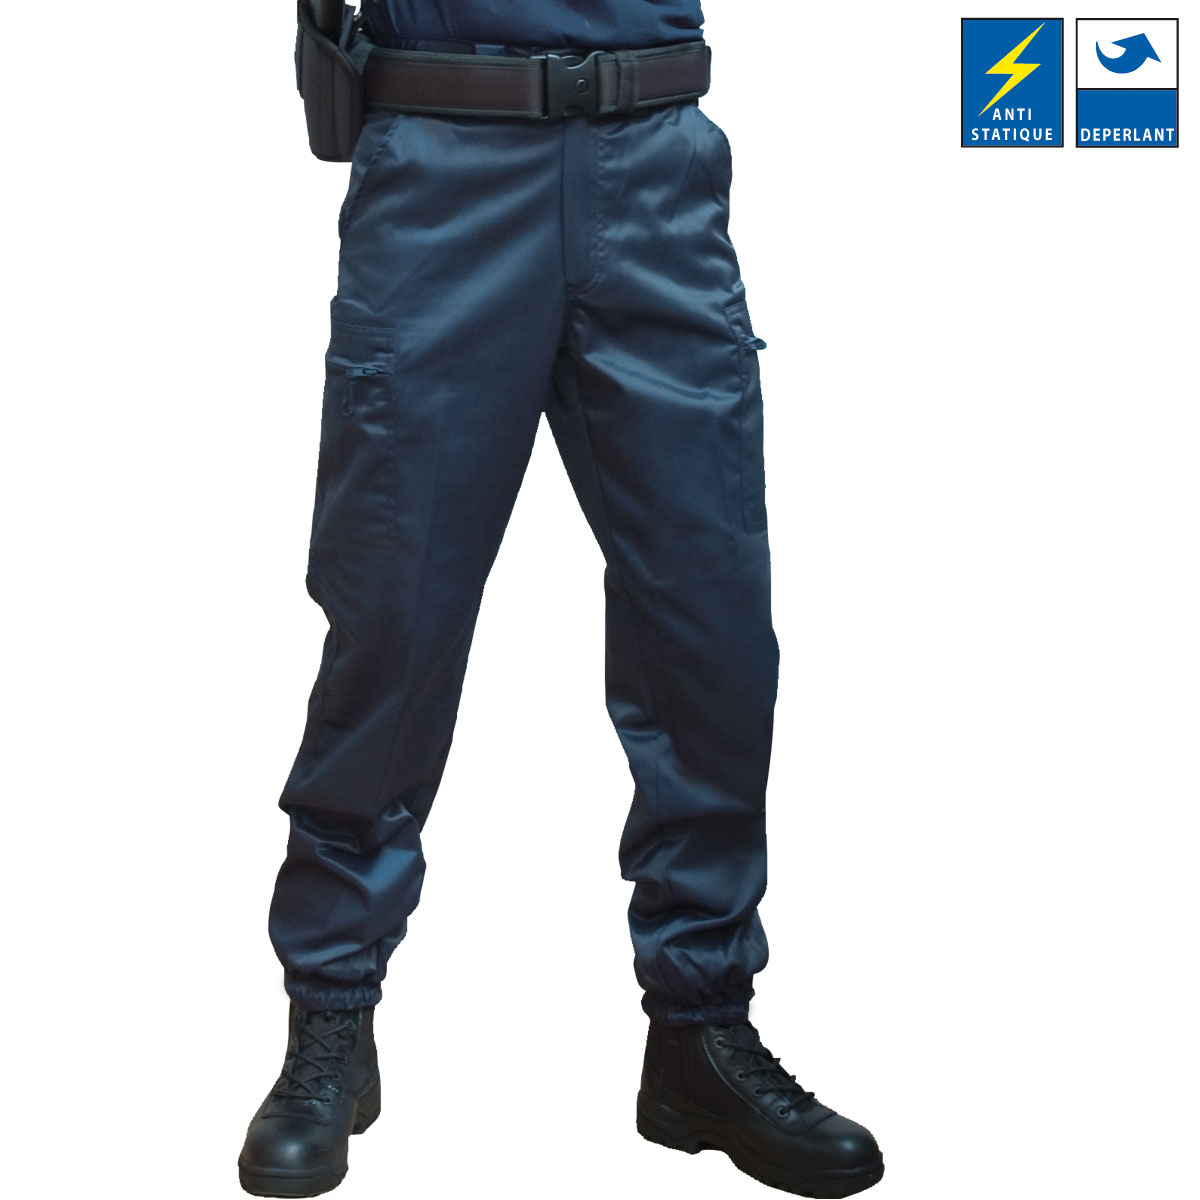 Pantalon intervention anti-statique déperlant bleu marine type sécurité police gendarmerie